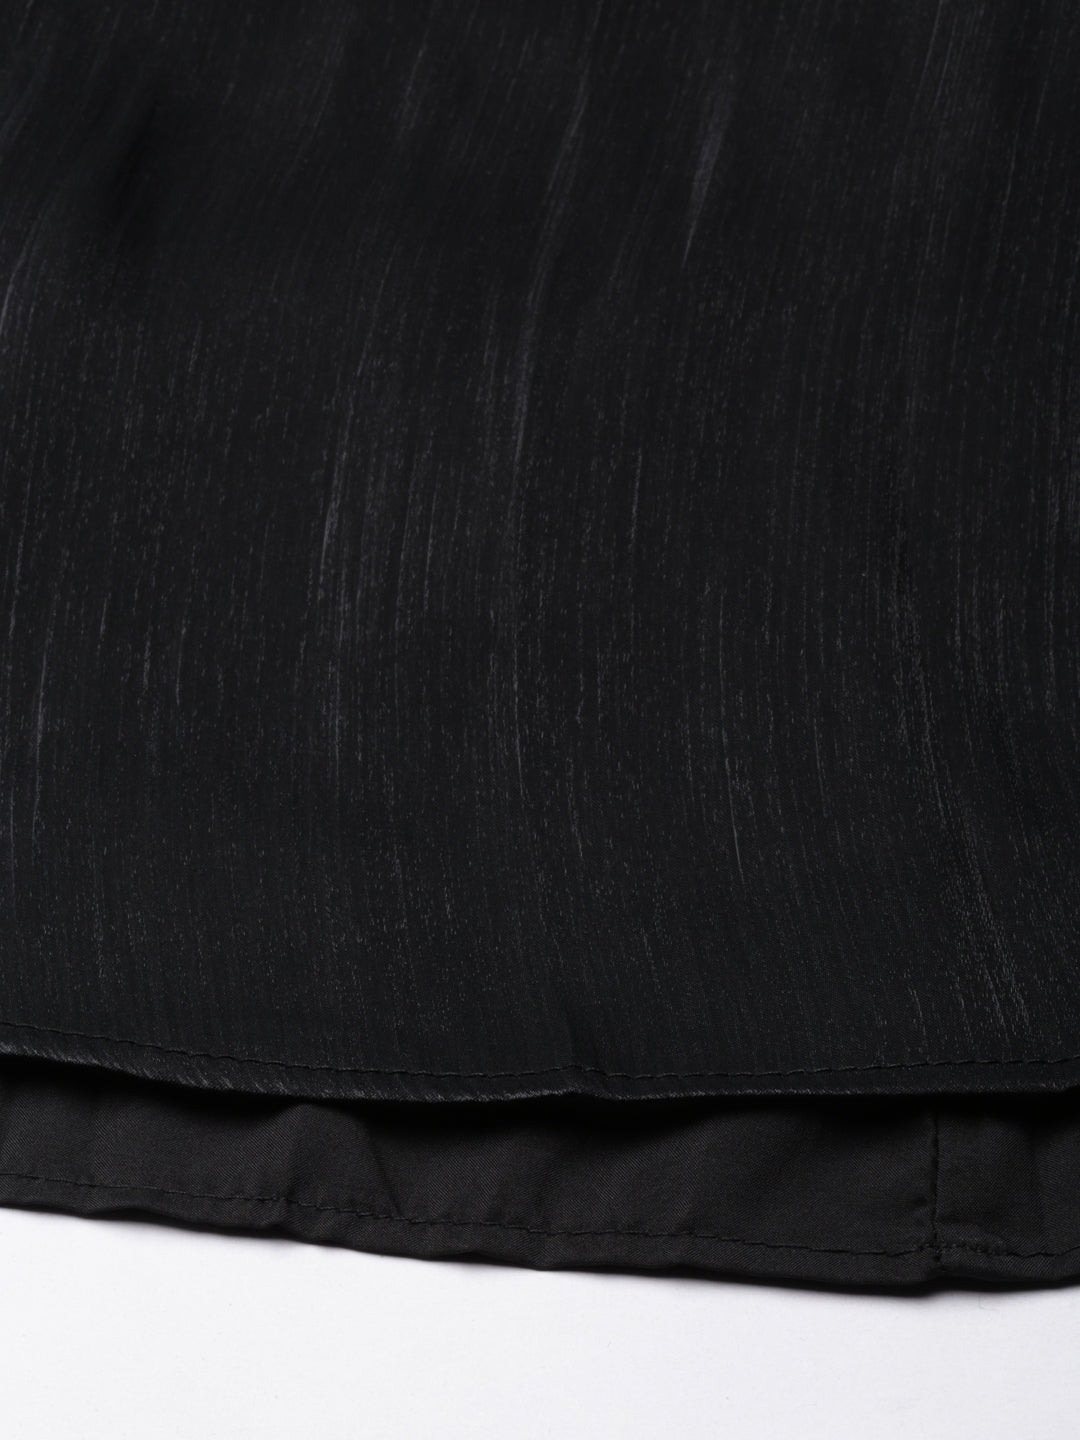 Women Solid Black Flared Midi Skirt